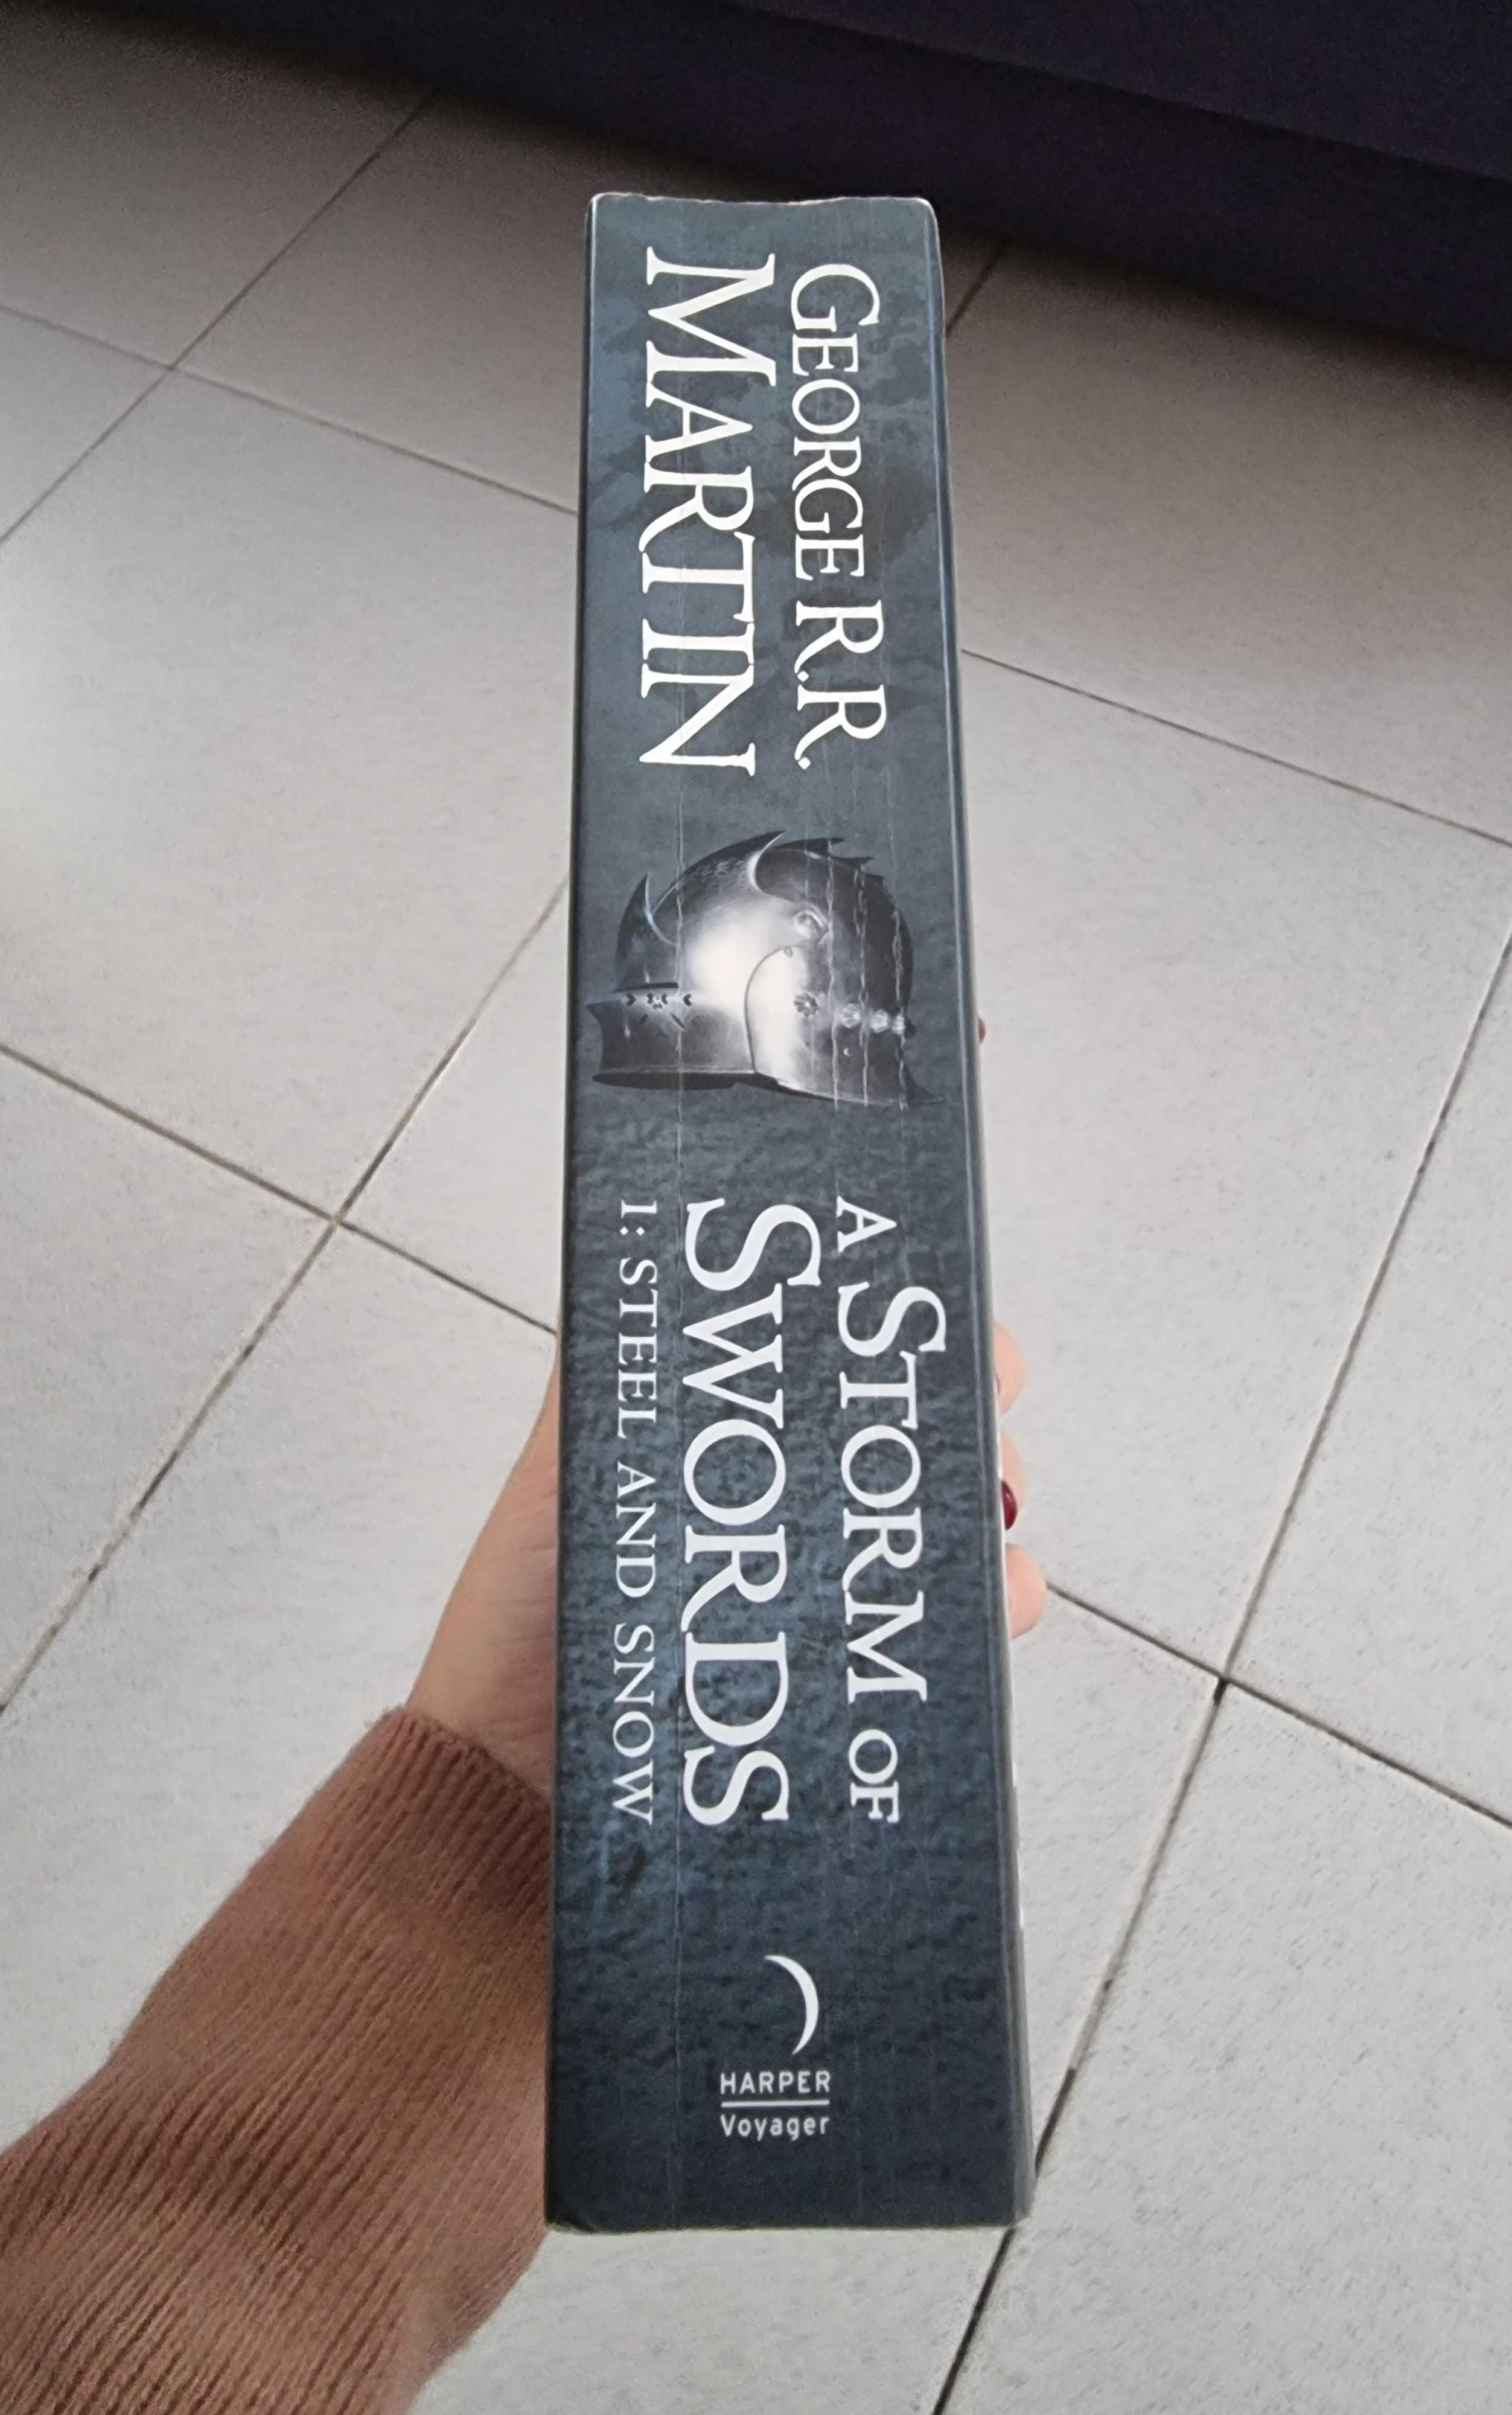 Livro "A Storm of Swords 1: Steel and Snow" de George R. R. Martin